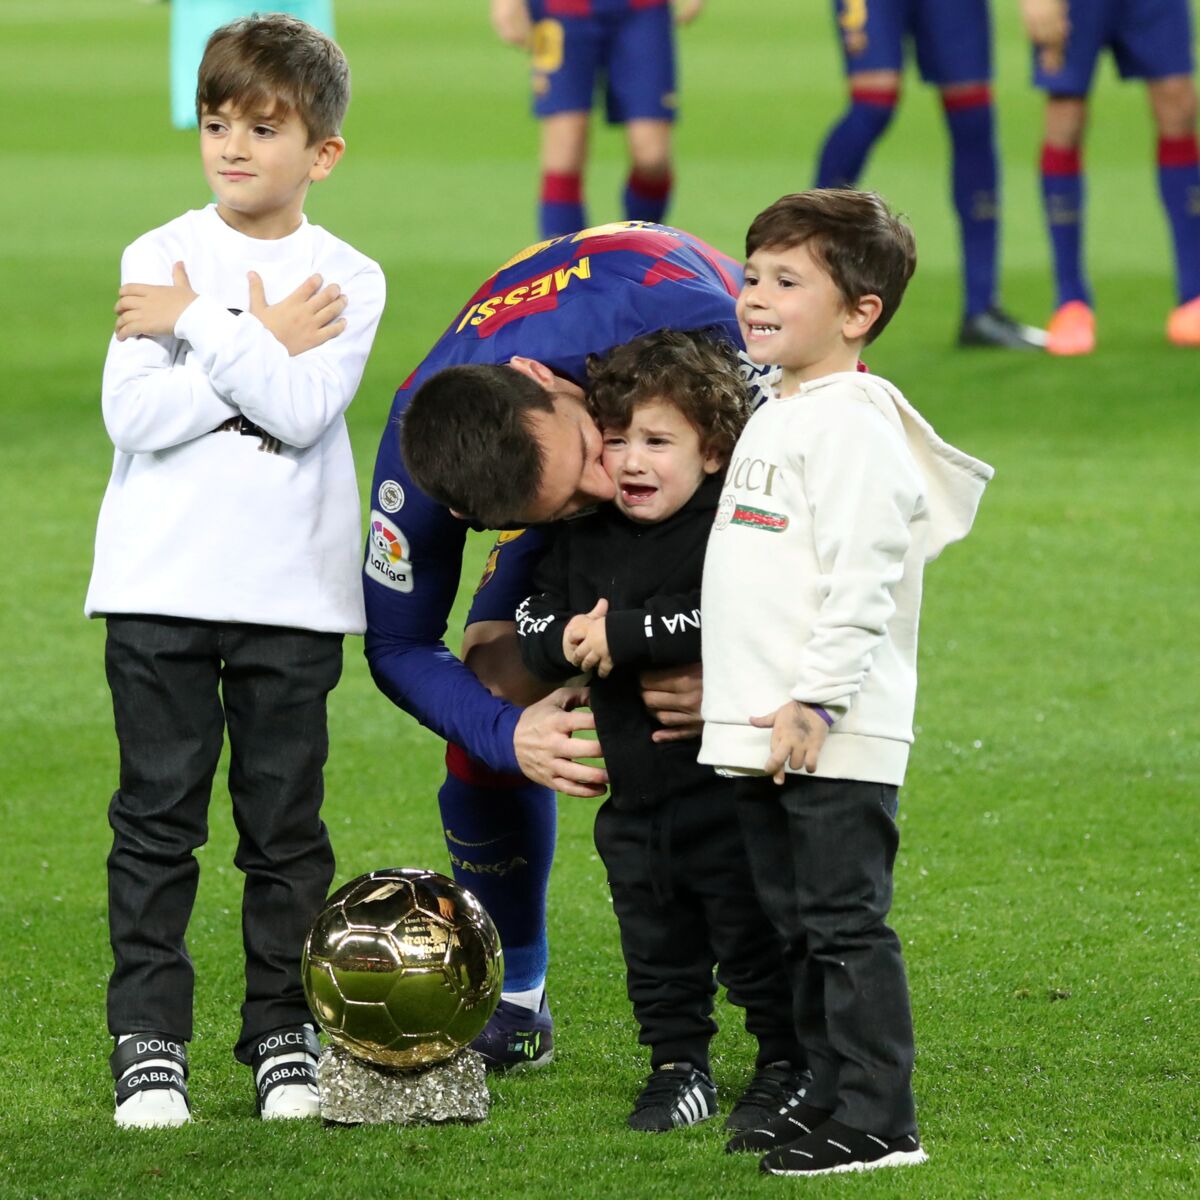 On aime l'initiative de Lionel Messi, à la recherche de l'enfant